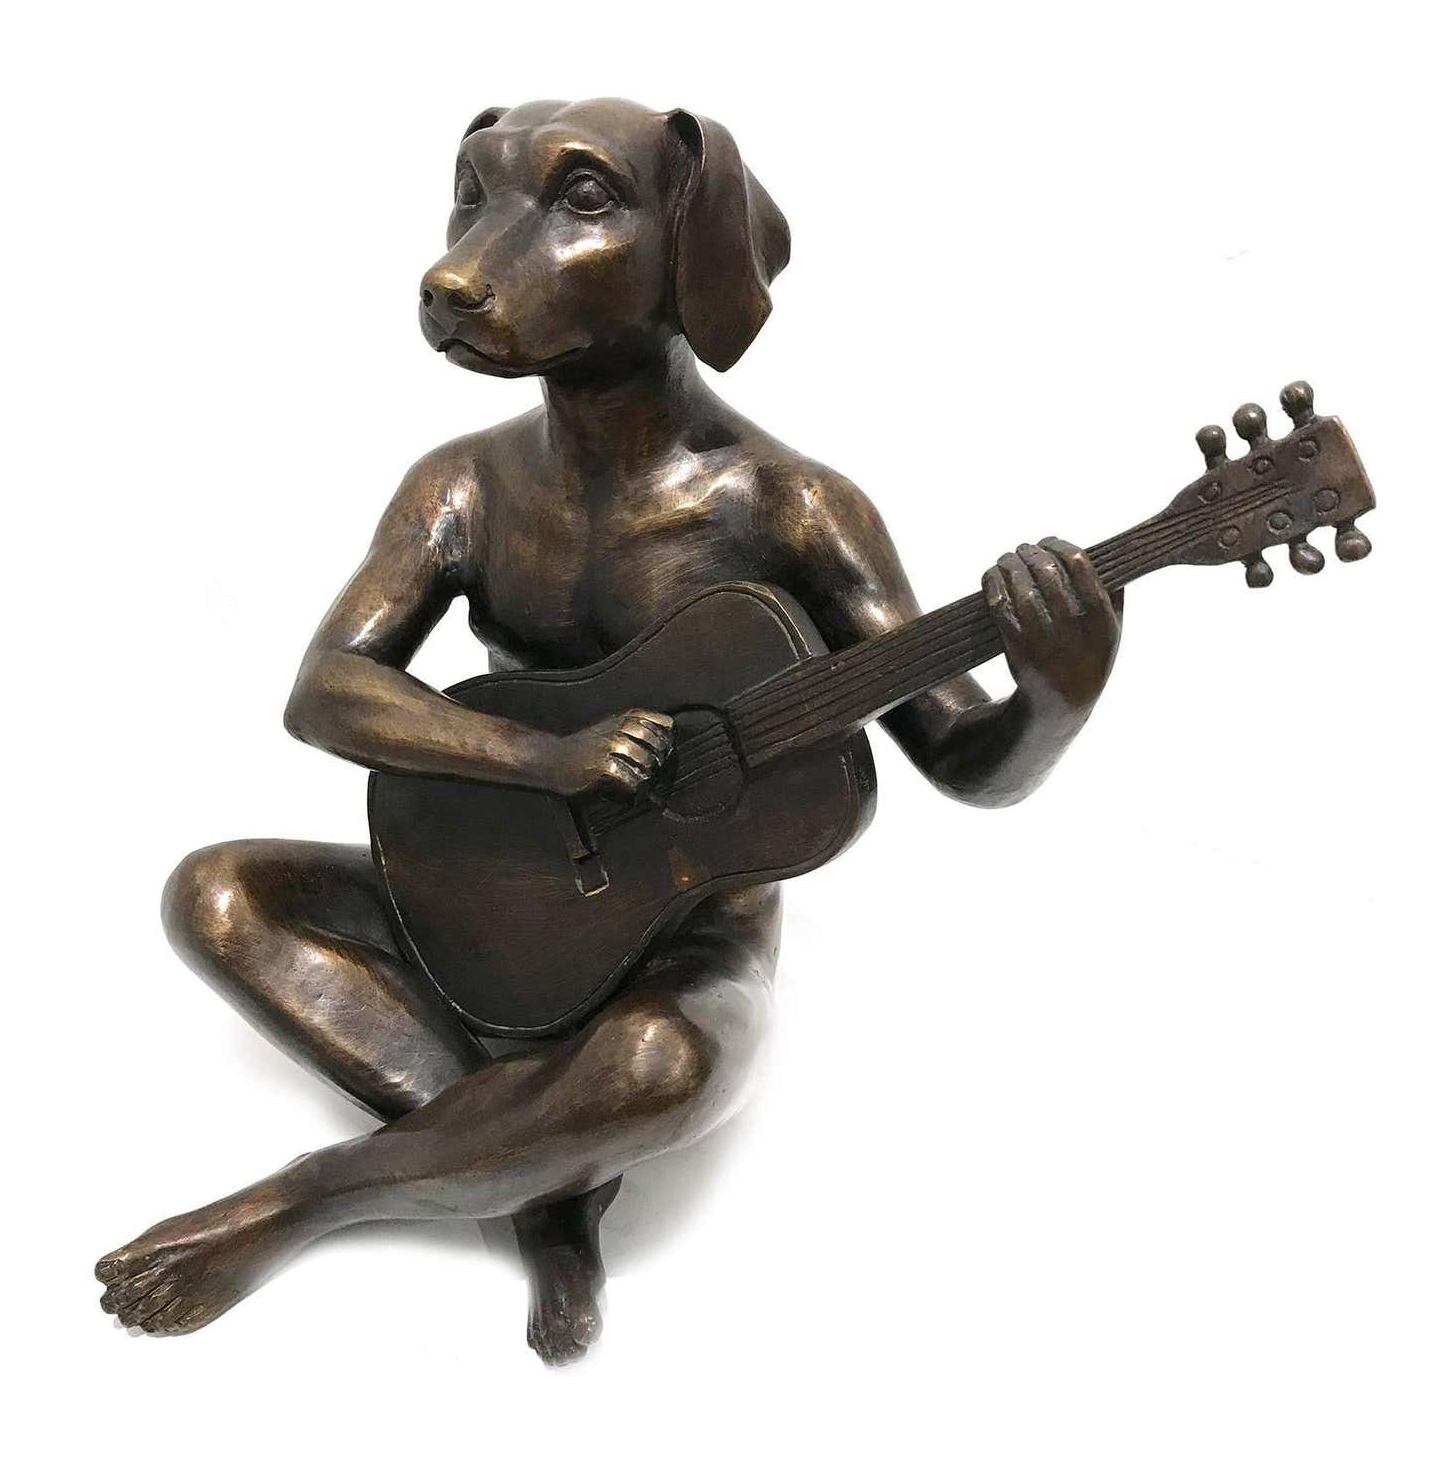 Dog Man Sculpture